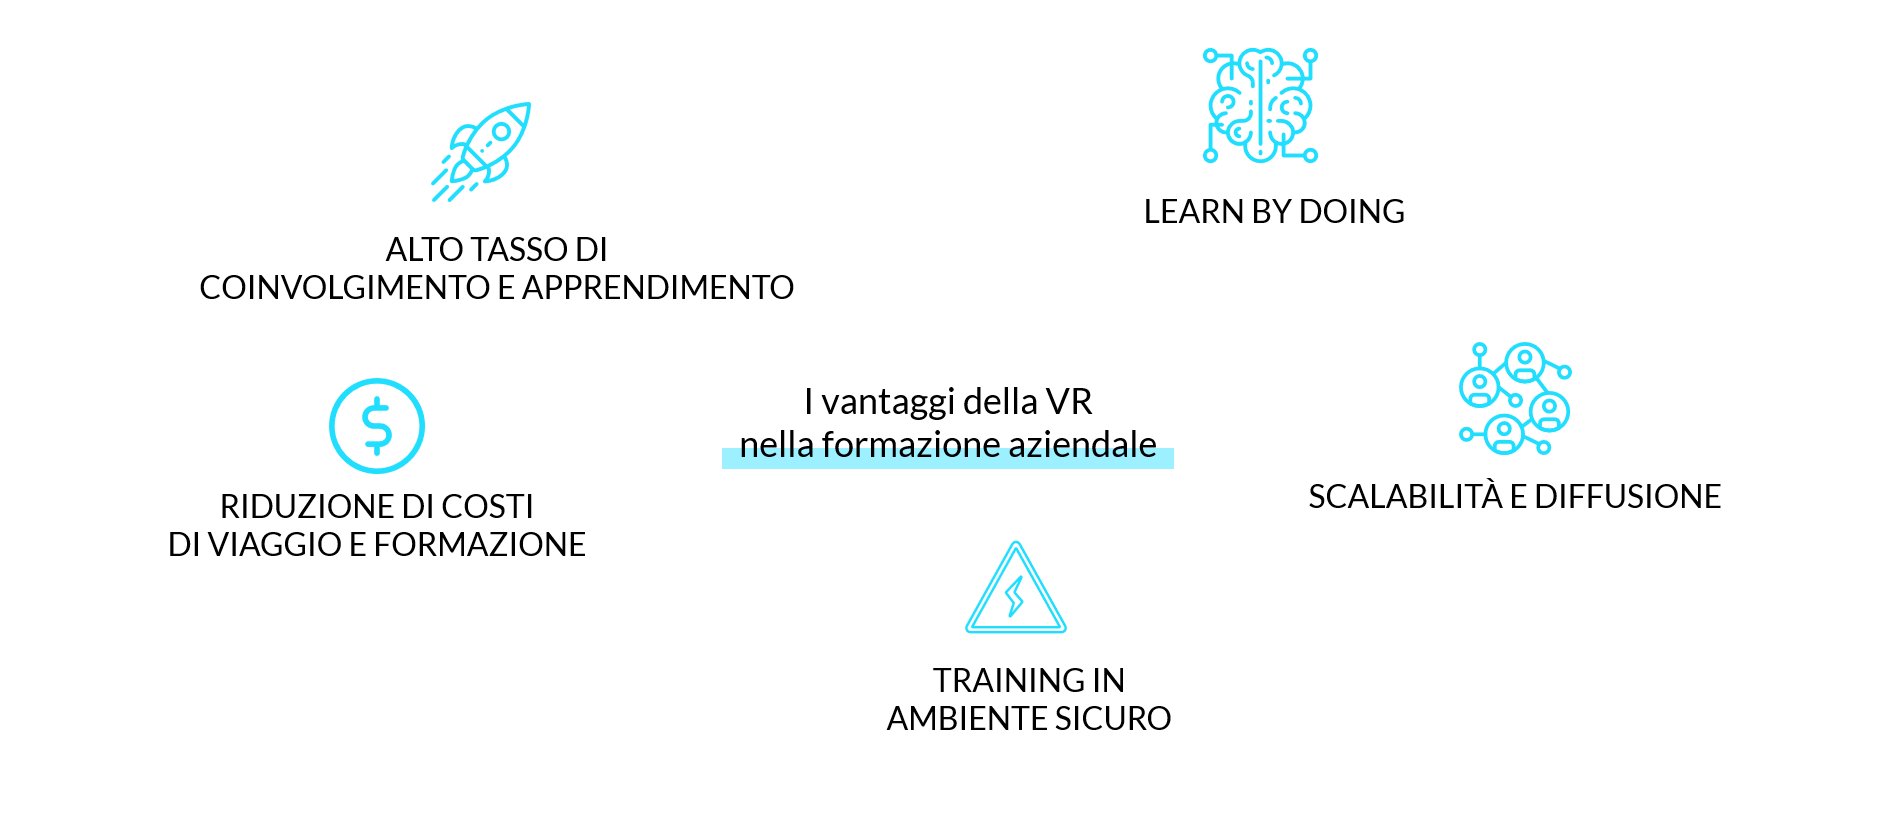 Ma perché la VR?